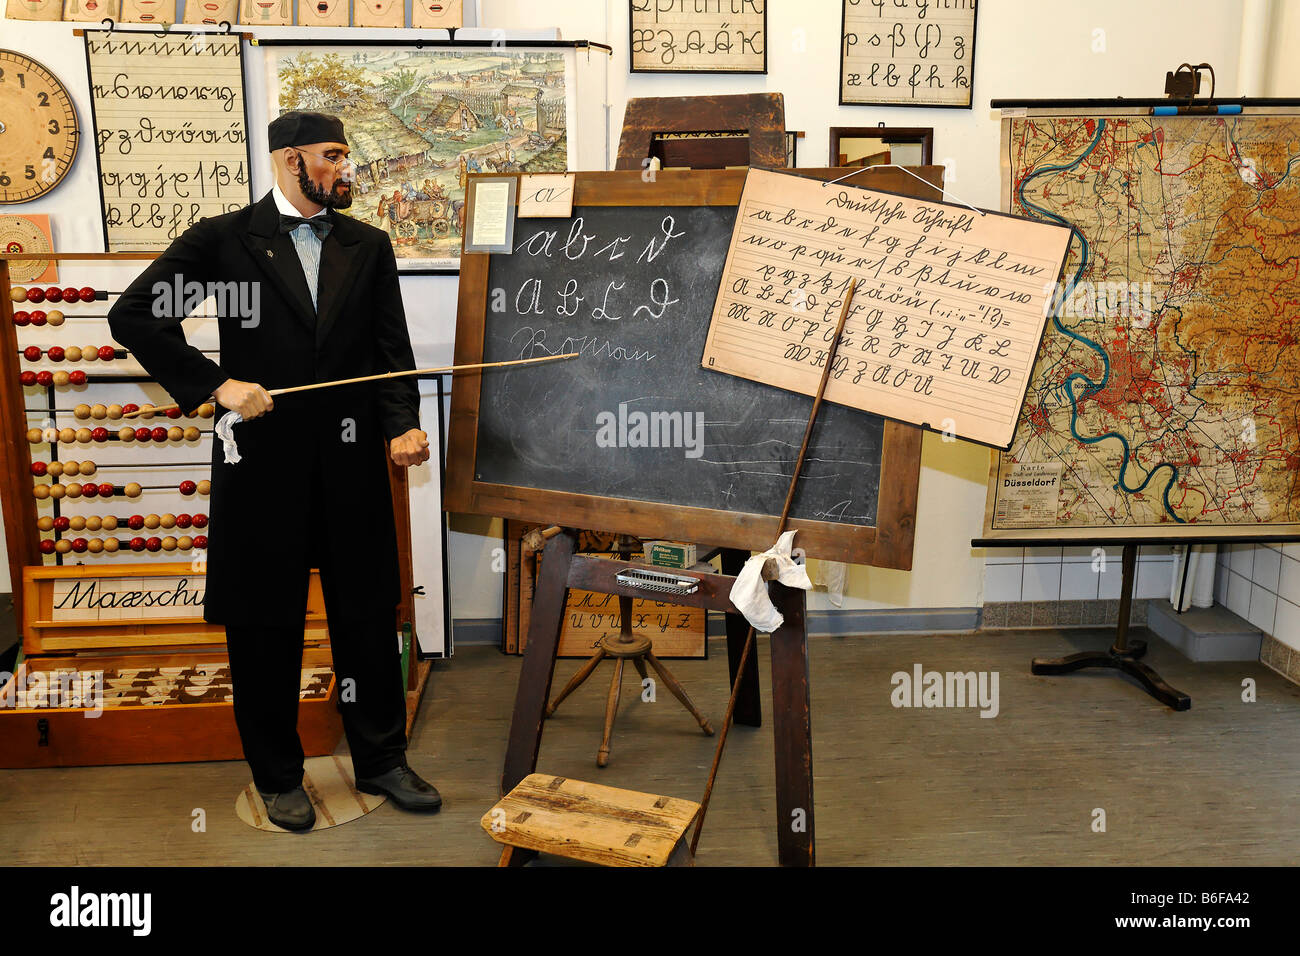 Lehrer Schaufensterpuppe stehend vor einer Tafel aus der Zeit um 1900, auf  Briefe mit einem Stock Lehre writi Stockfotografie - Alamy